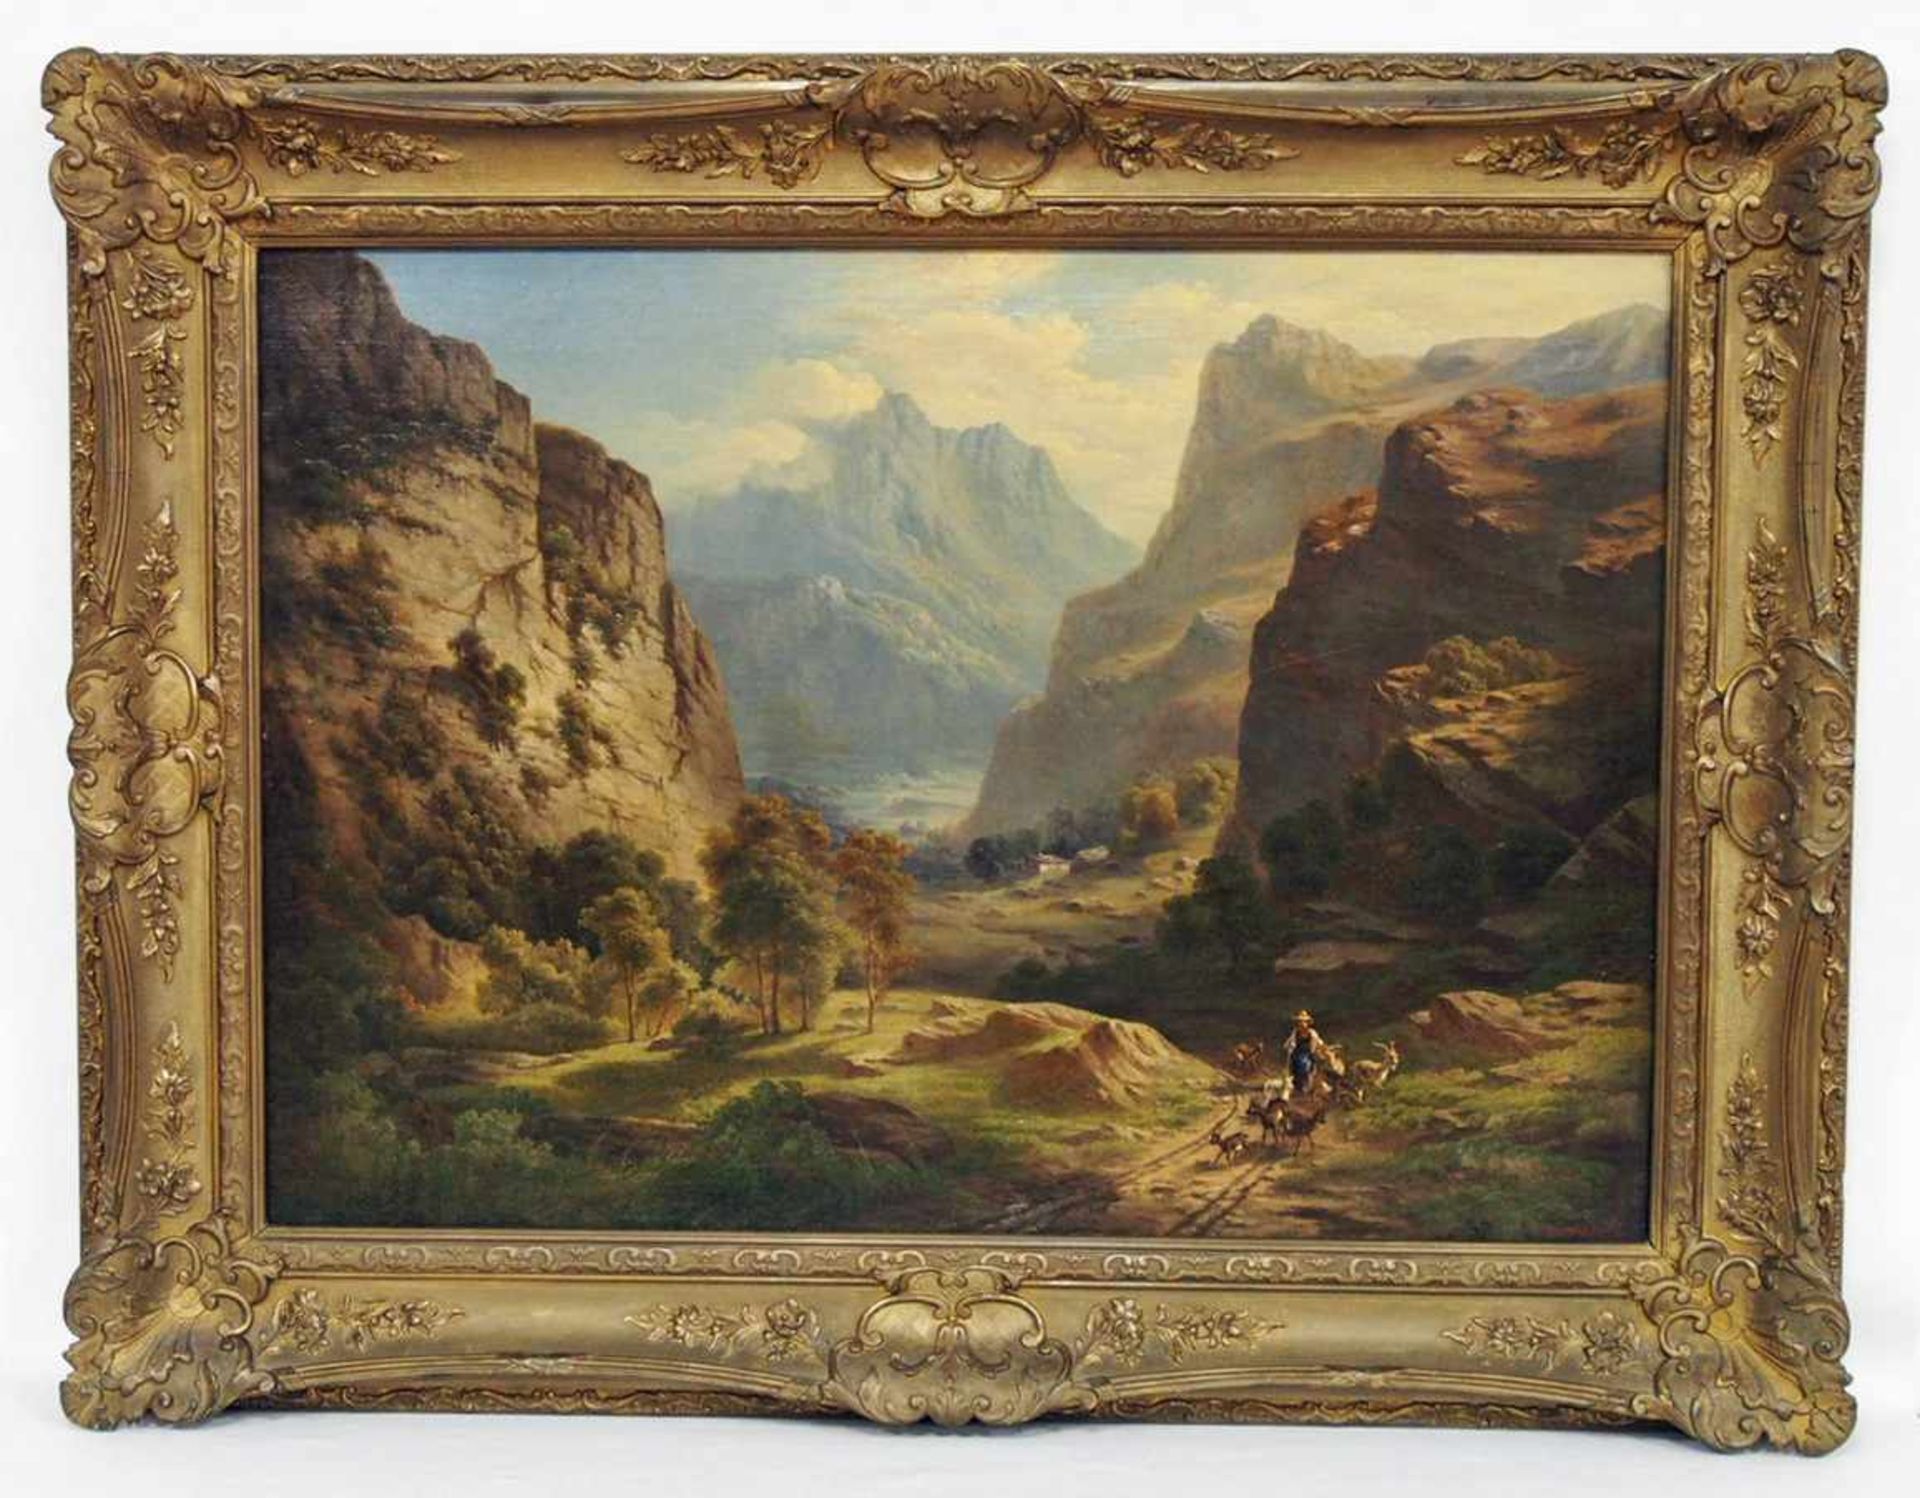 BERNARDI, Joseph1826-1907Im Berner OberlandÖl auf Leinwand, signiert unten rechts, 53 x 88 cm, - Image 2 of 3